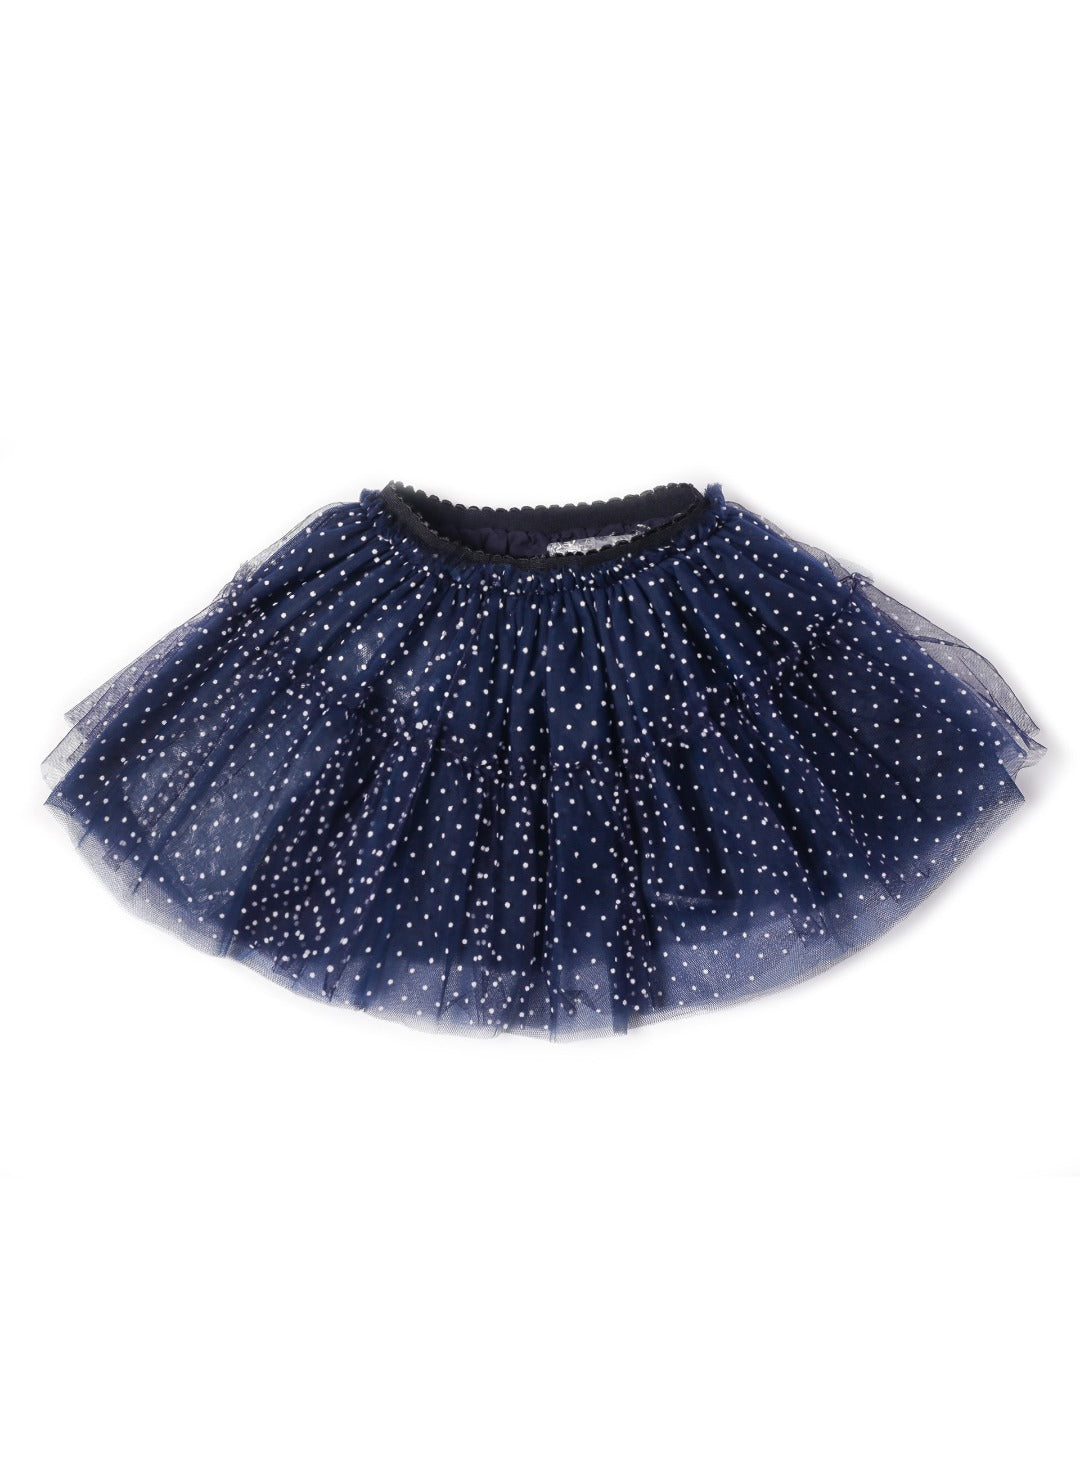 royal blue tutu skirt with mini white dot 